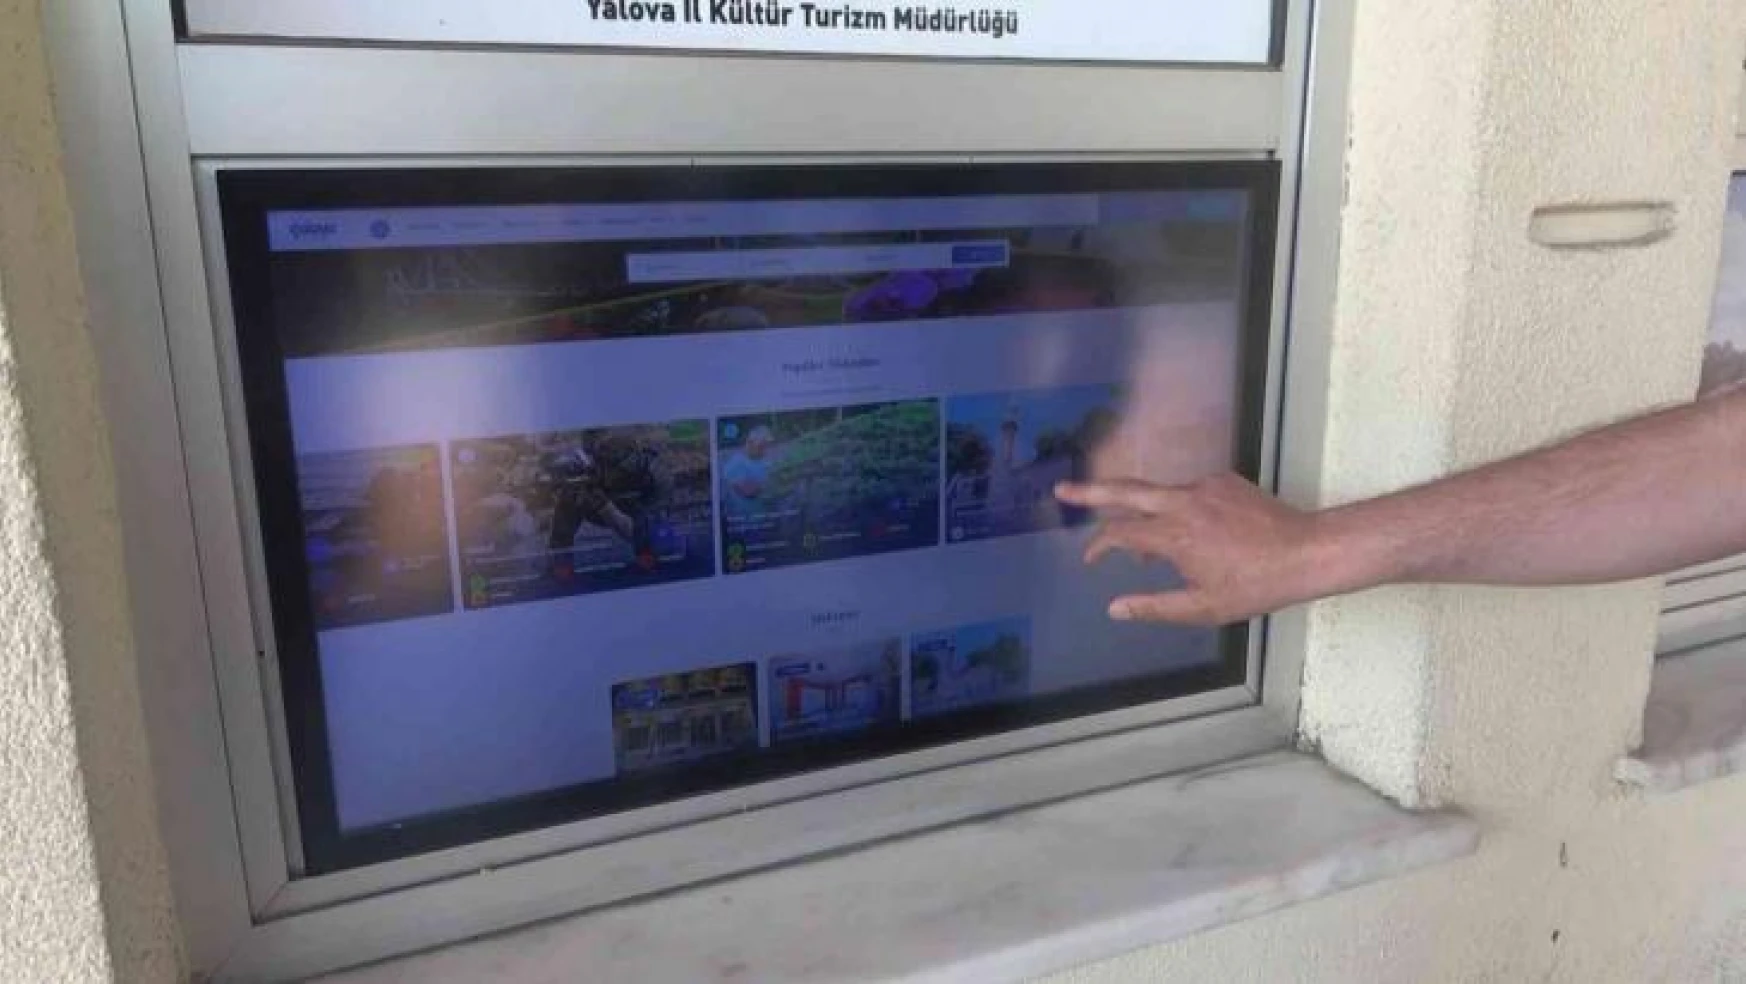 Yalova'ya gelen turistlere 'Dijital Kent Tanıtım Sistemi' rehberlik ediyor